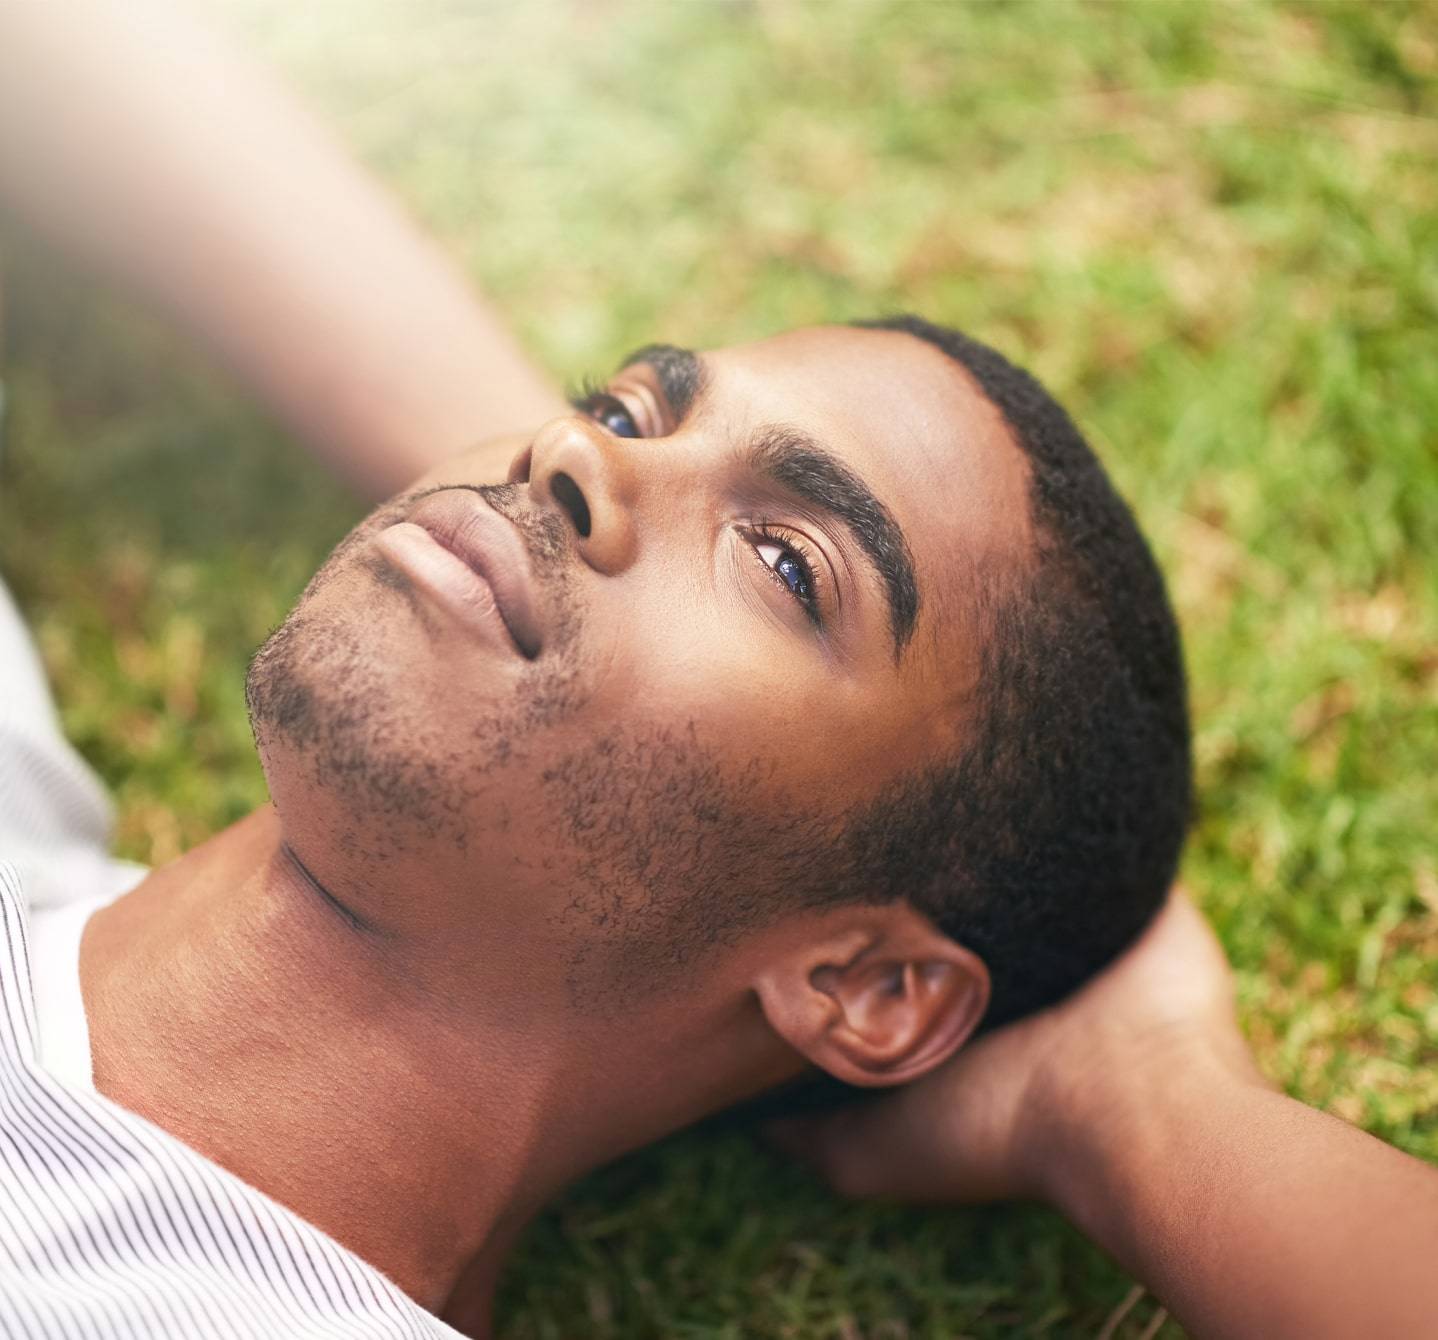 Symptômes d’allergie au pollen de graminées? Cet homme allongé sur l’herbe, les mains derrière la tête, n’en souffre pas ou les a sous contrôle. 